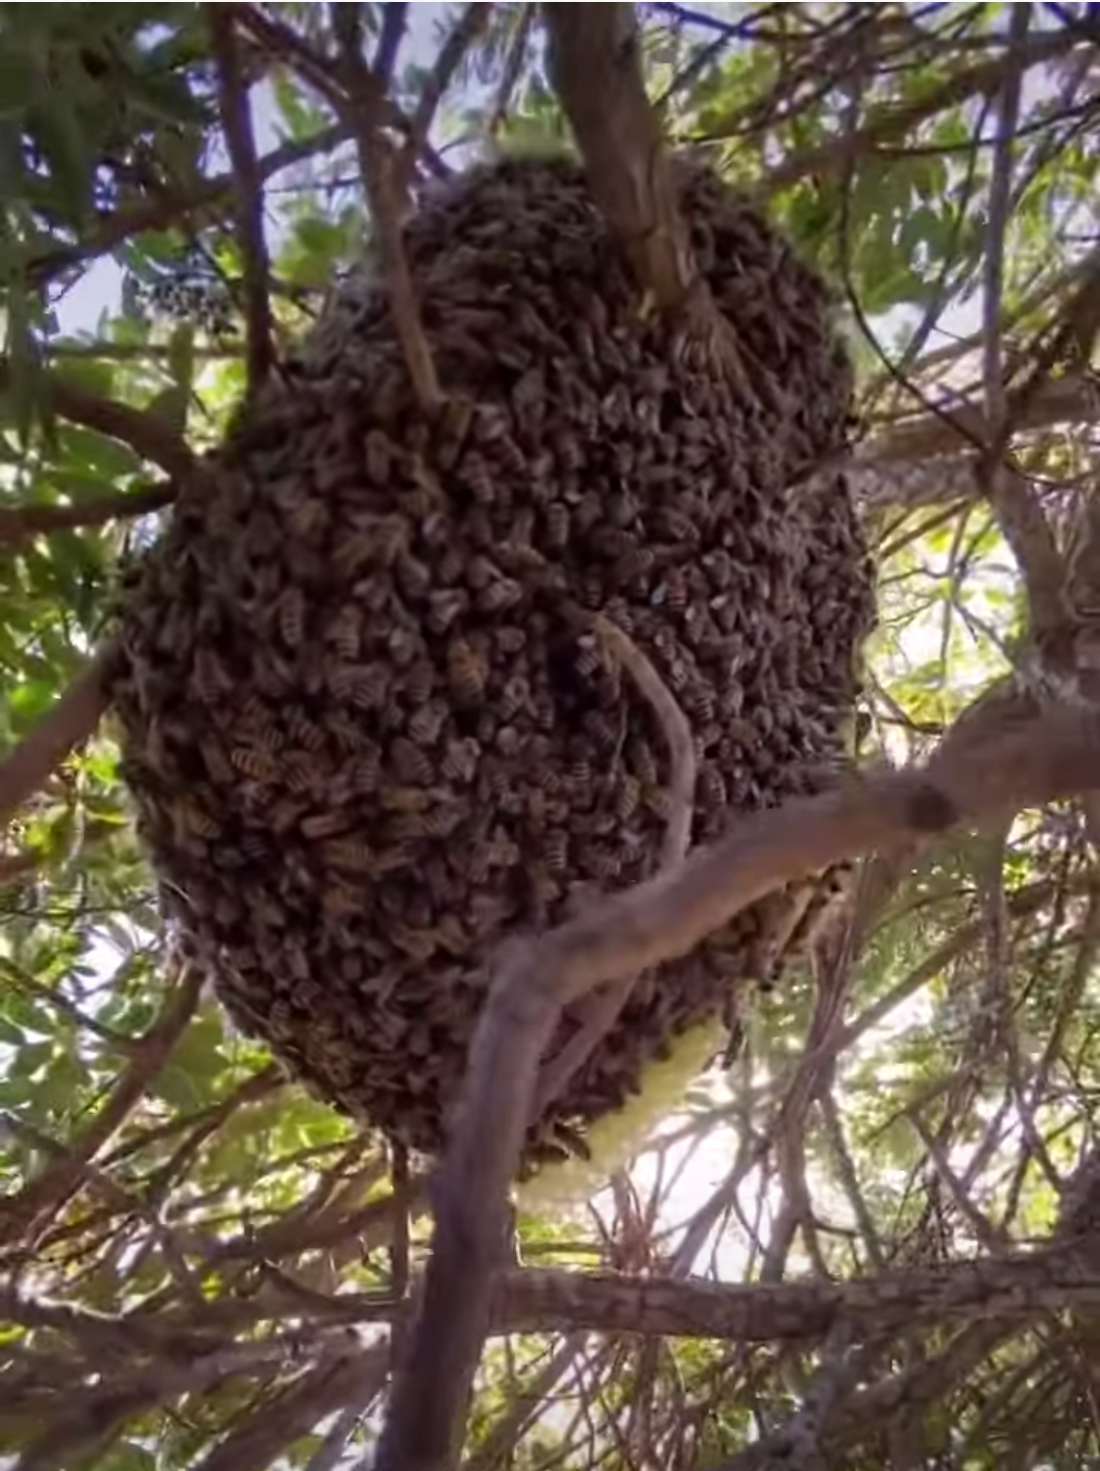 Santa Barbara bee rescue on the Mesa by Santa Barbara Hives